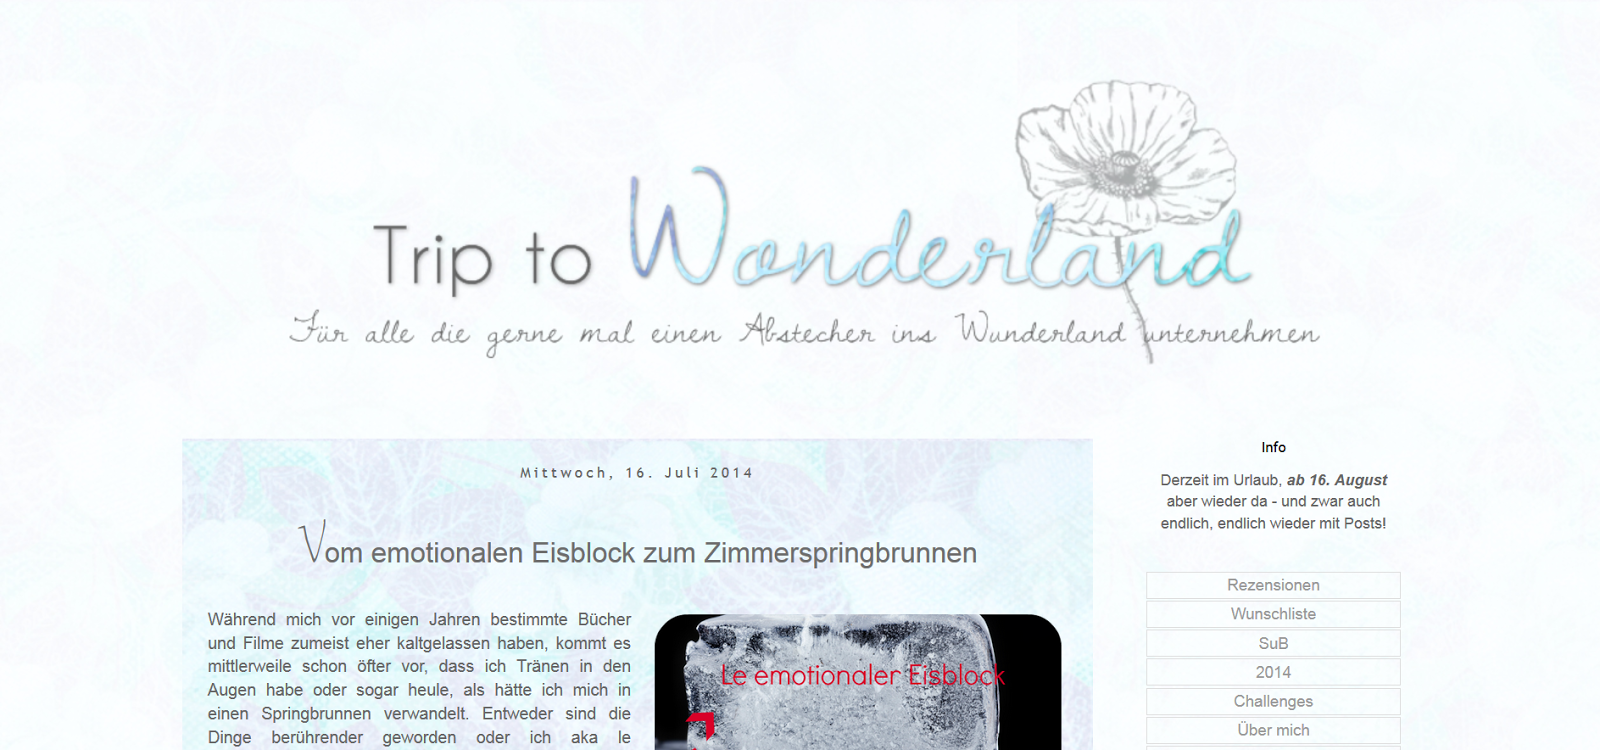 http://wanderingthewonderland.blogspot.de/